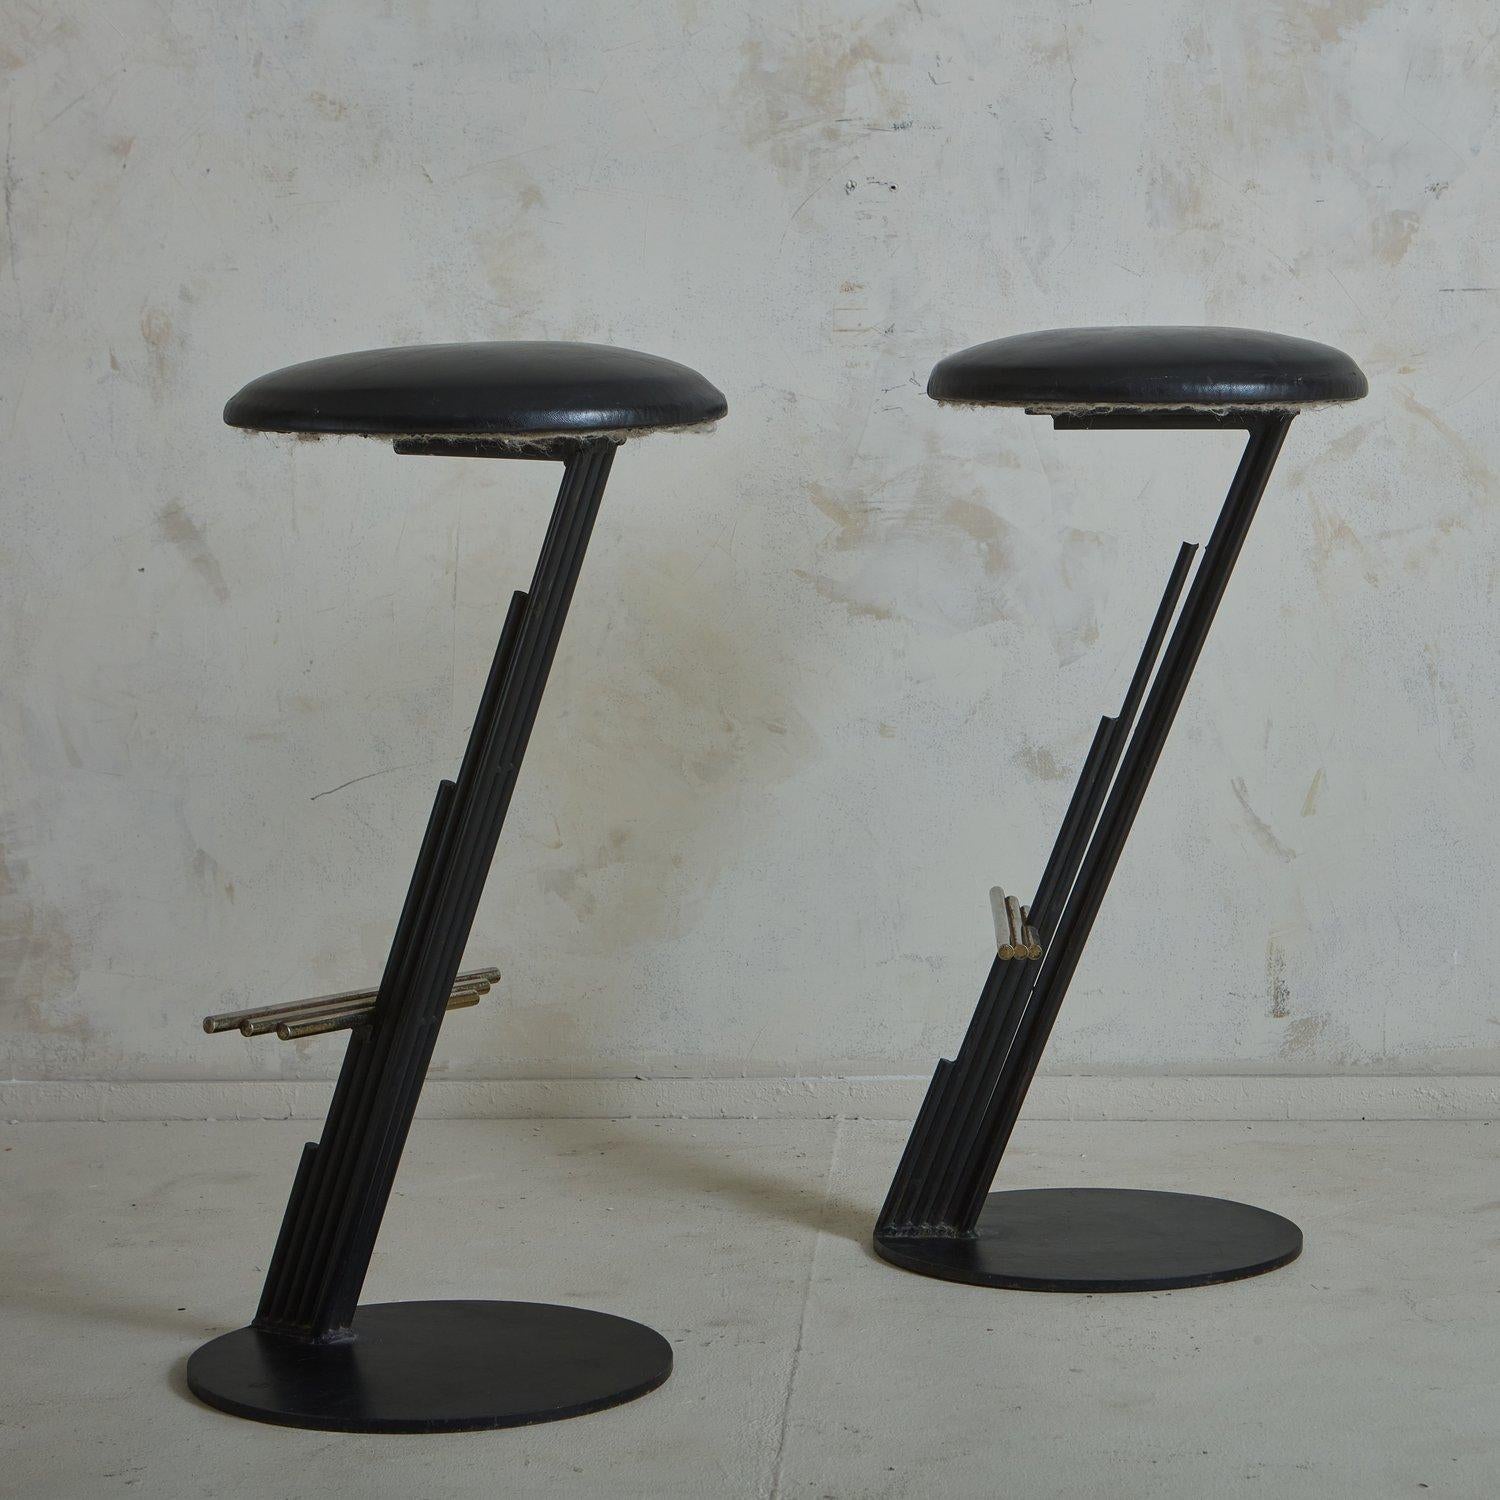 Paire de tabourets sculpturaux Brutalist des années 1980 de Curtis Jere (1910-2008), avec un cadre en Z en métal émaillé noir en porte-à-faux et des détails de tiges superposées. Ces tabourets ont des bases circulaires en métal et des sièges